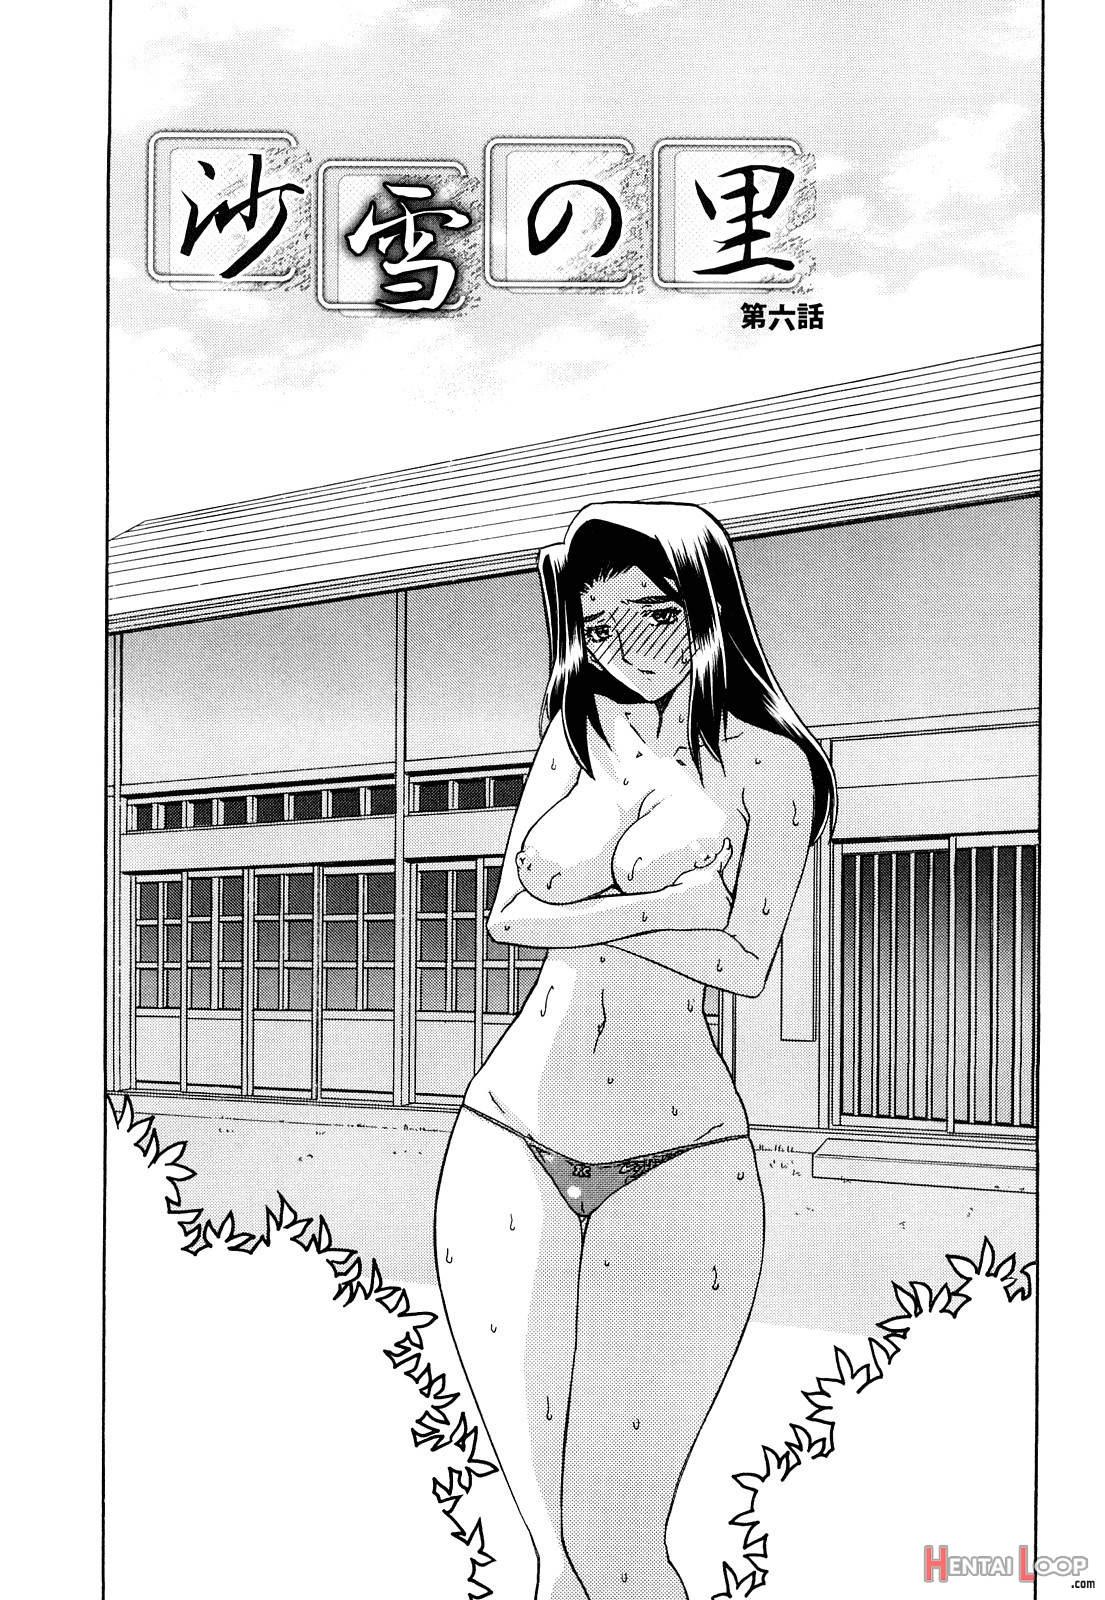 Sayuki No Sato page 87